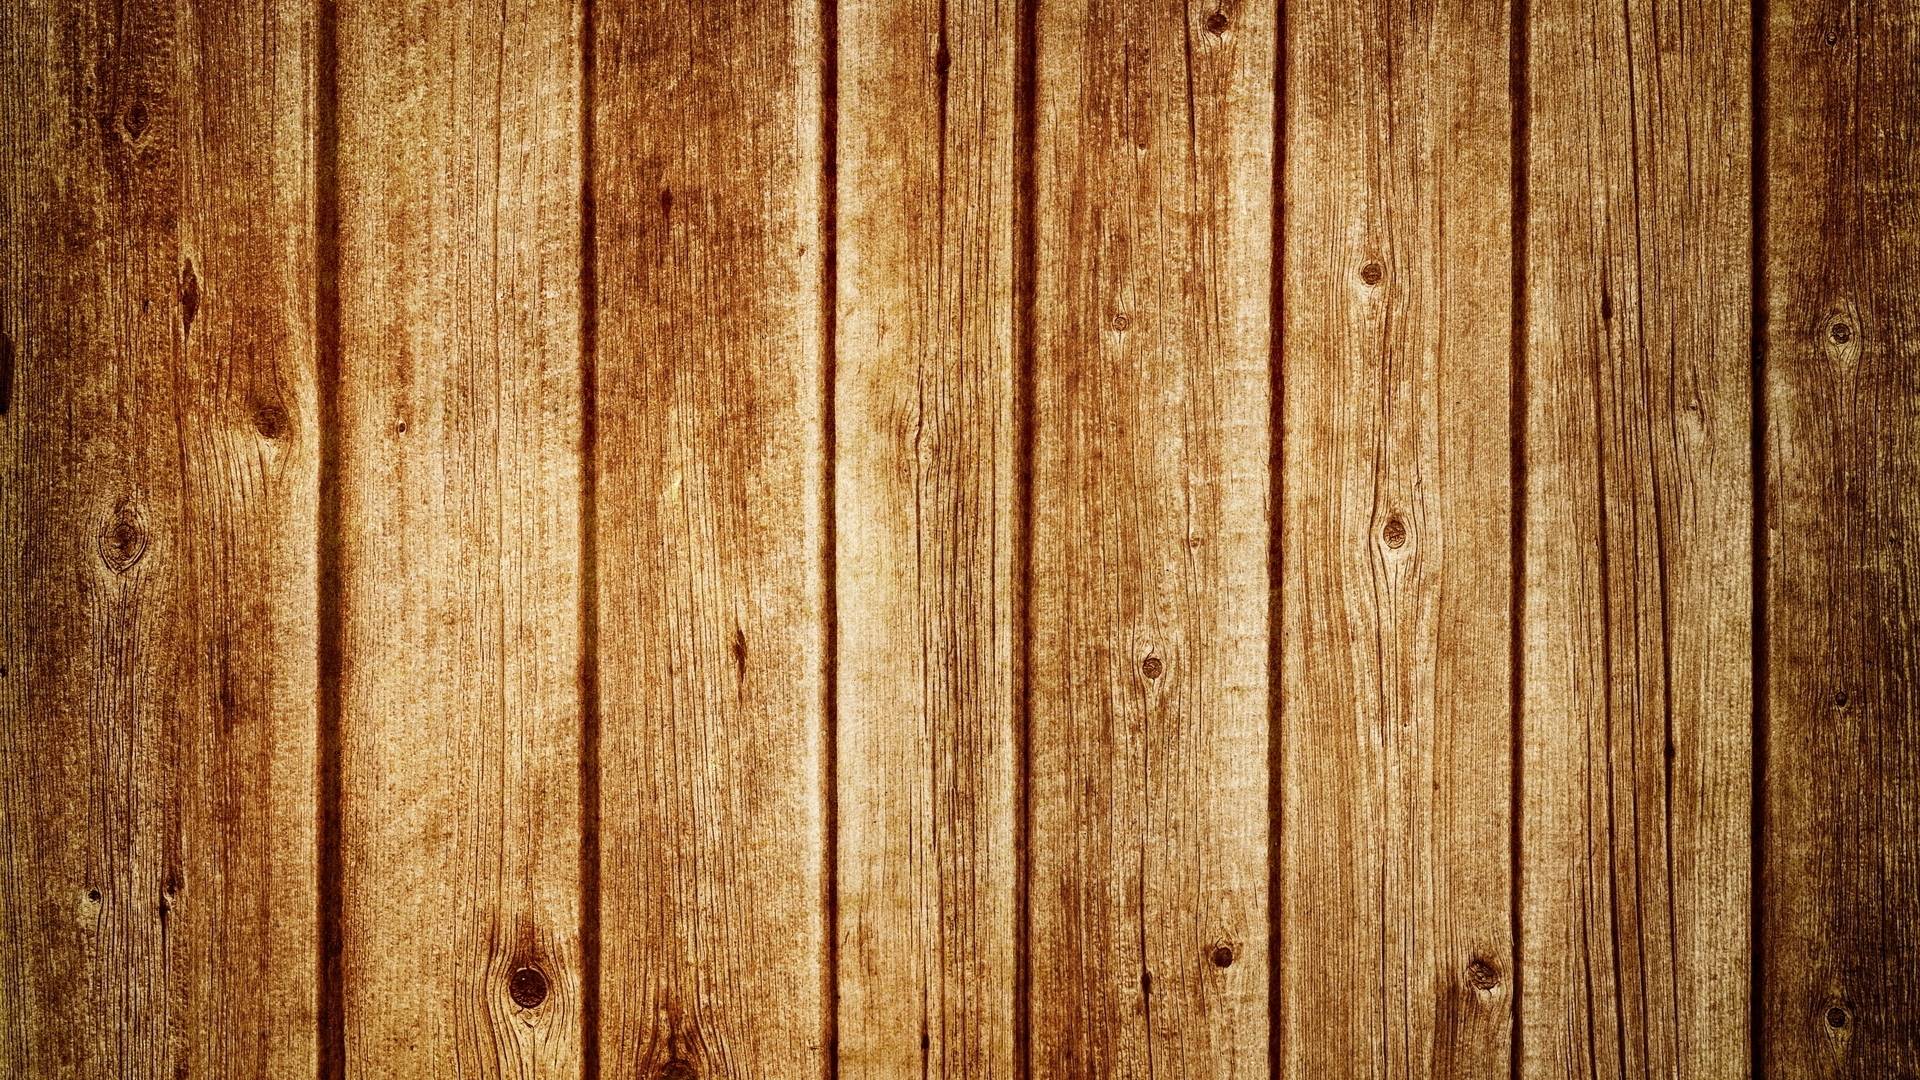 Hình nền gỗ sẽ mang lại cho bạn nguồn cảm hứng mới mẻ trong thiết kế của mình. Hãy thưởng thức bức ảnh liên quan để tìm kiếm những kiểu hình nền gỗ độc đáo nhé!